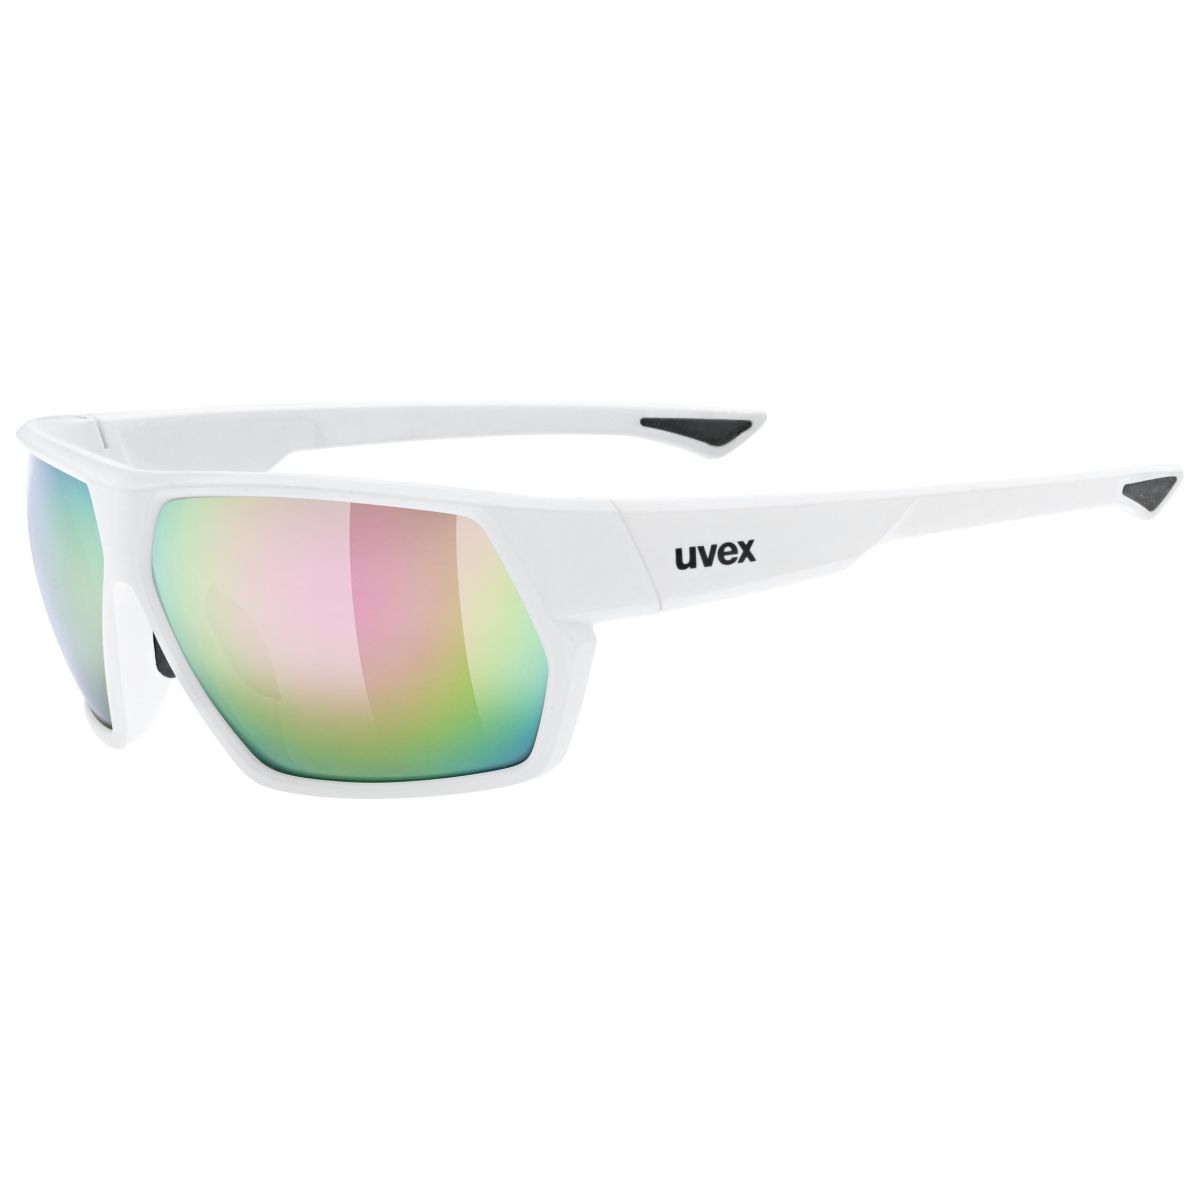 Produktbild von Uvex sportstyle 238 Brille - white matt/mirror pink